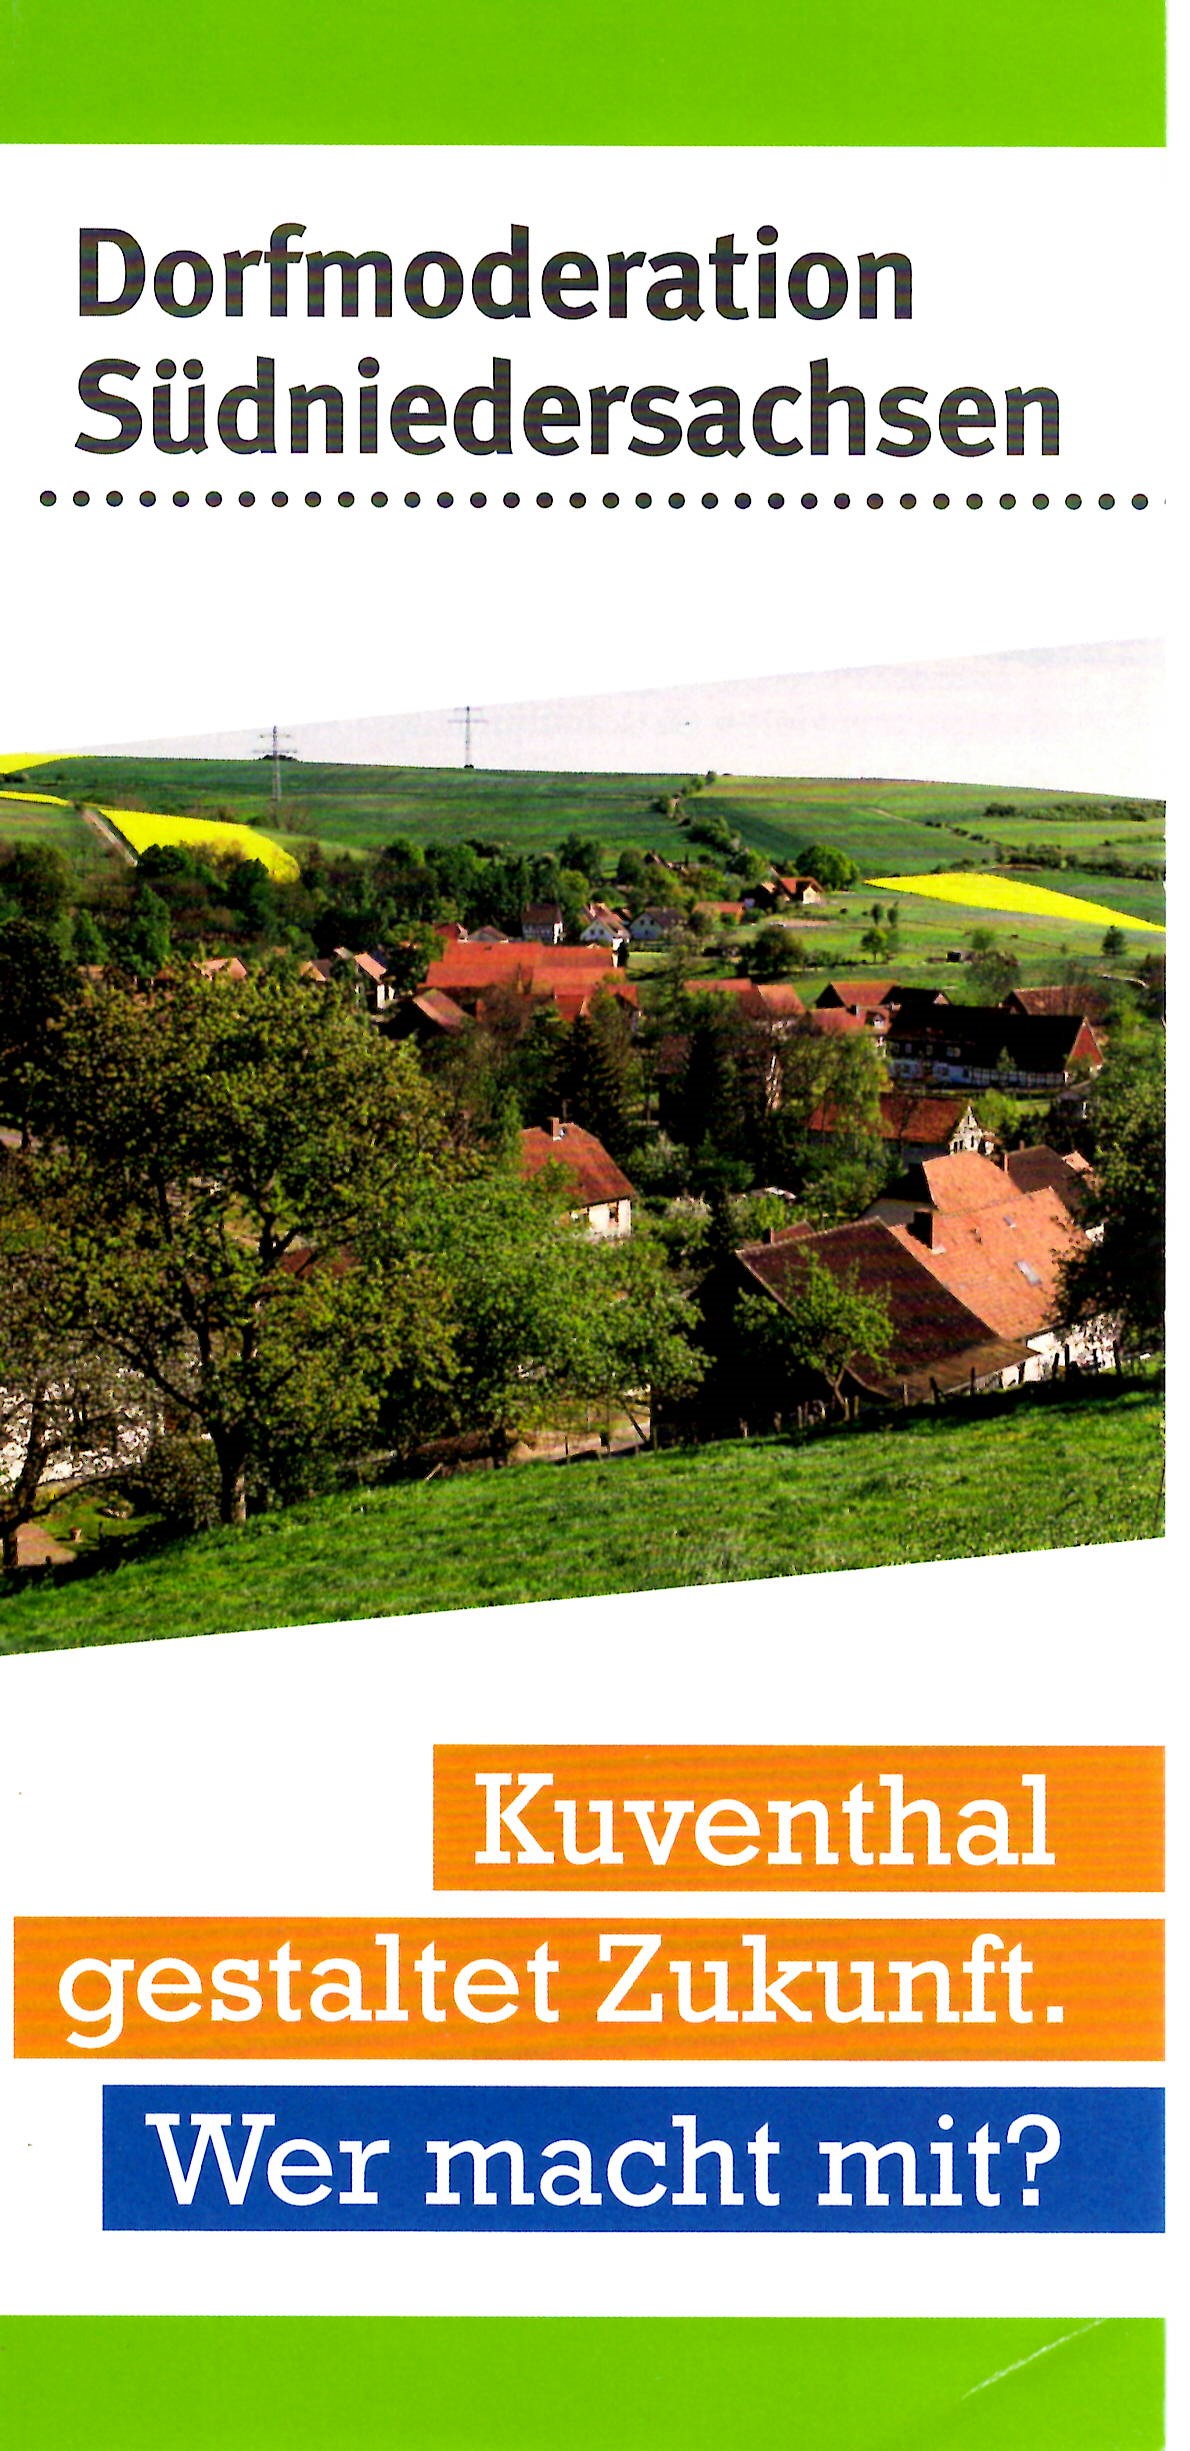 www.kuventhal.de - Dorfmoderation und ZukunftKuventhal